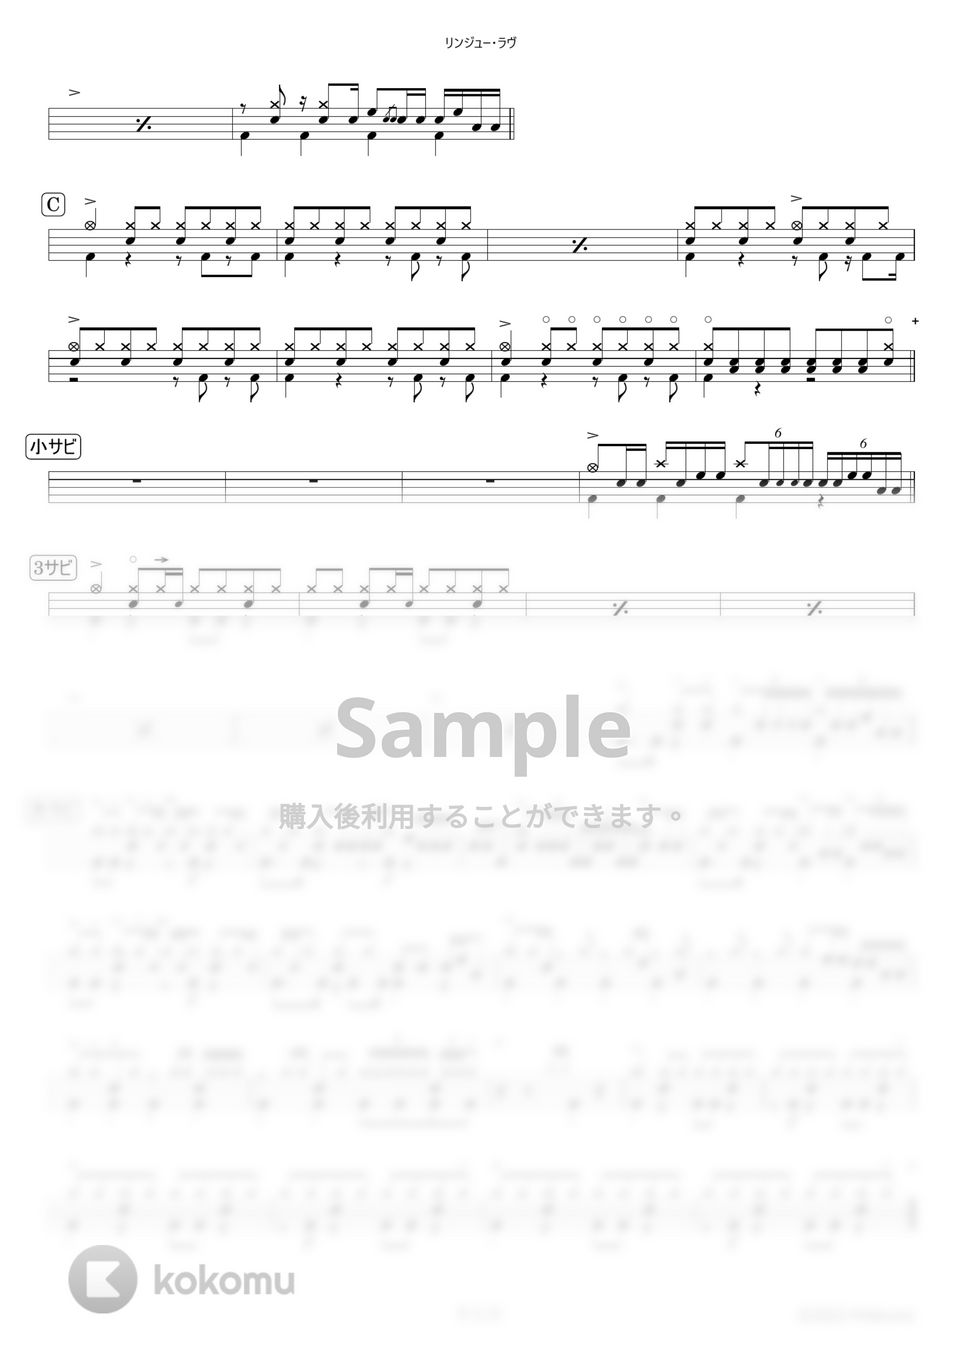 マカロニえんぴつ - リンジュー・ラヴ【ドラム楽譜】 by HYdrums